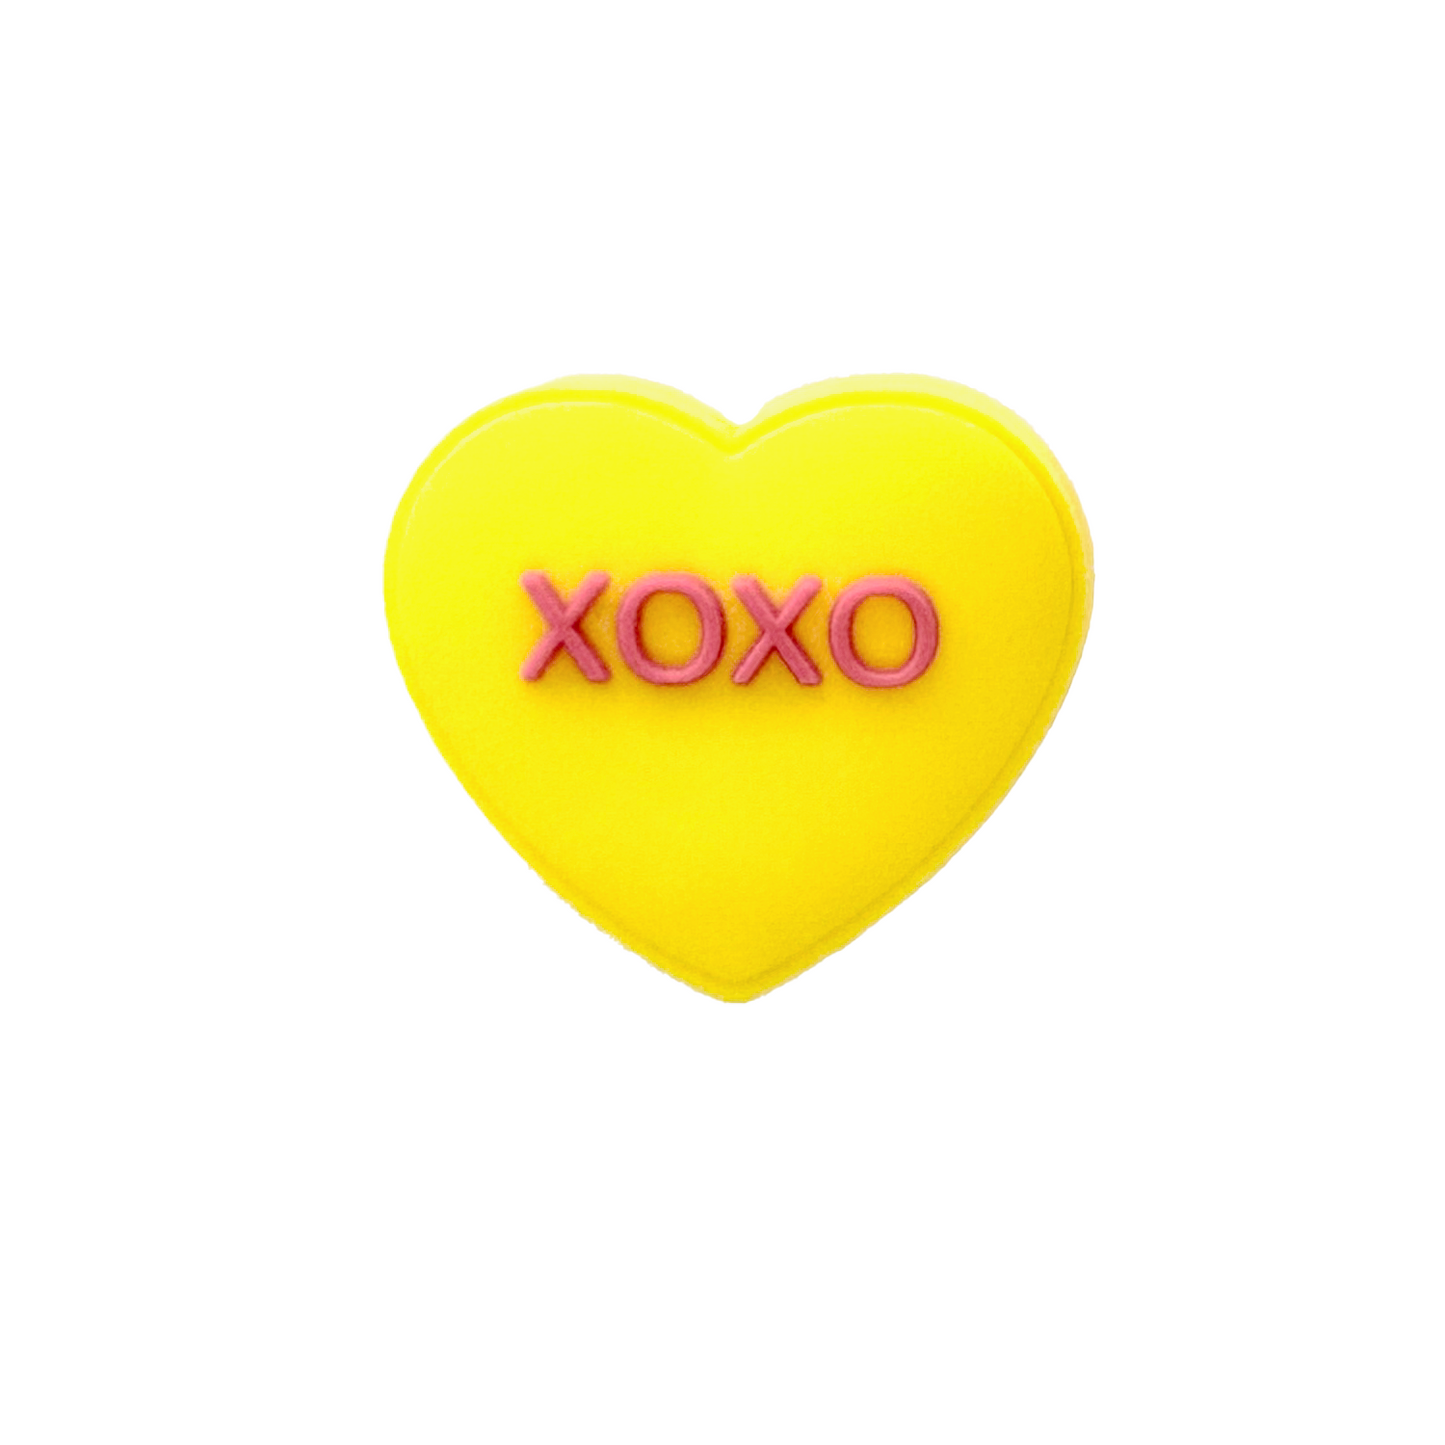 "XOXO" Heart - Pawpins Charm